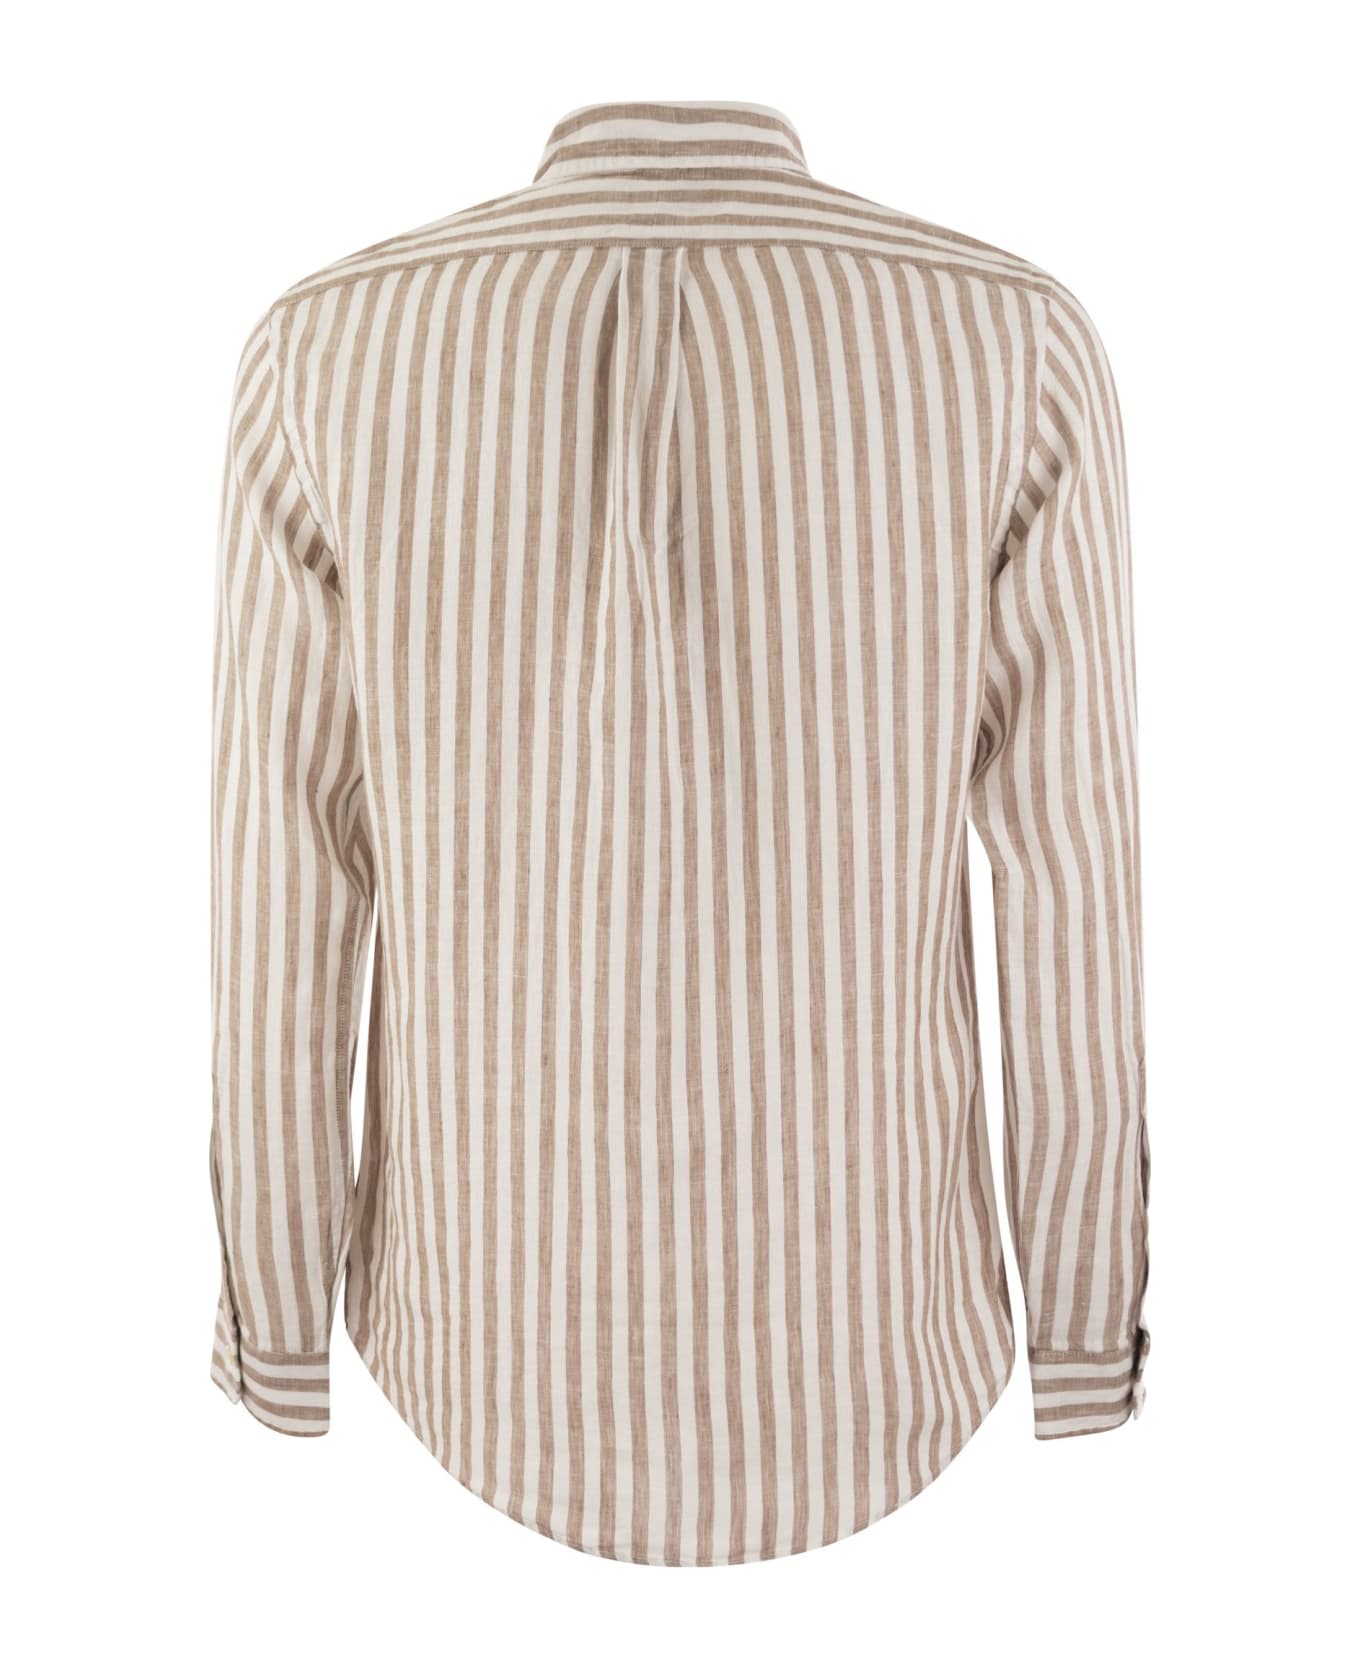 Polo Ralph Lauren Custom-fit Striped Linen Shirt - Kaki/white